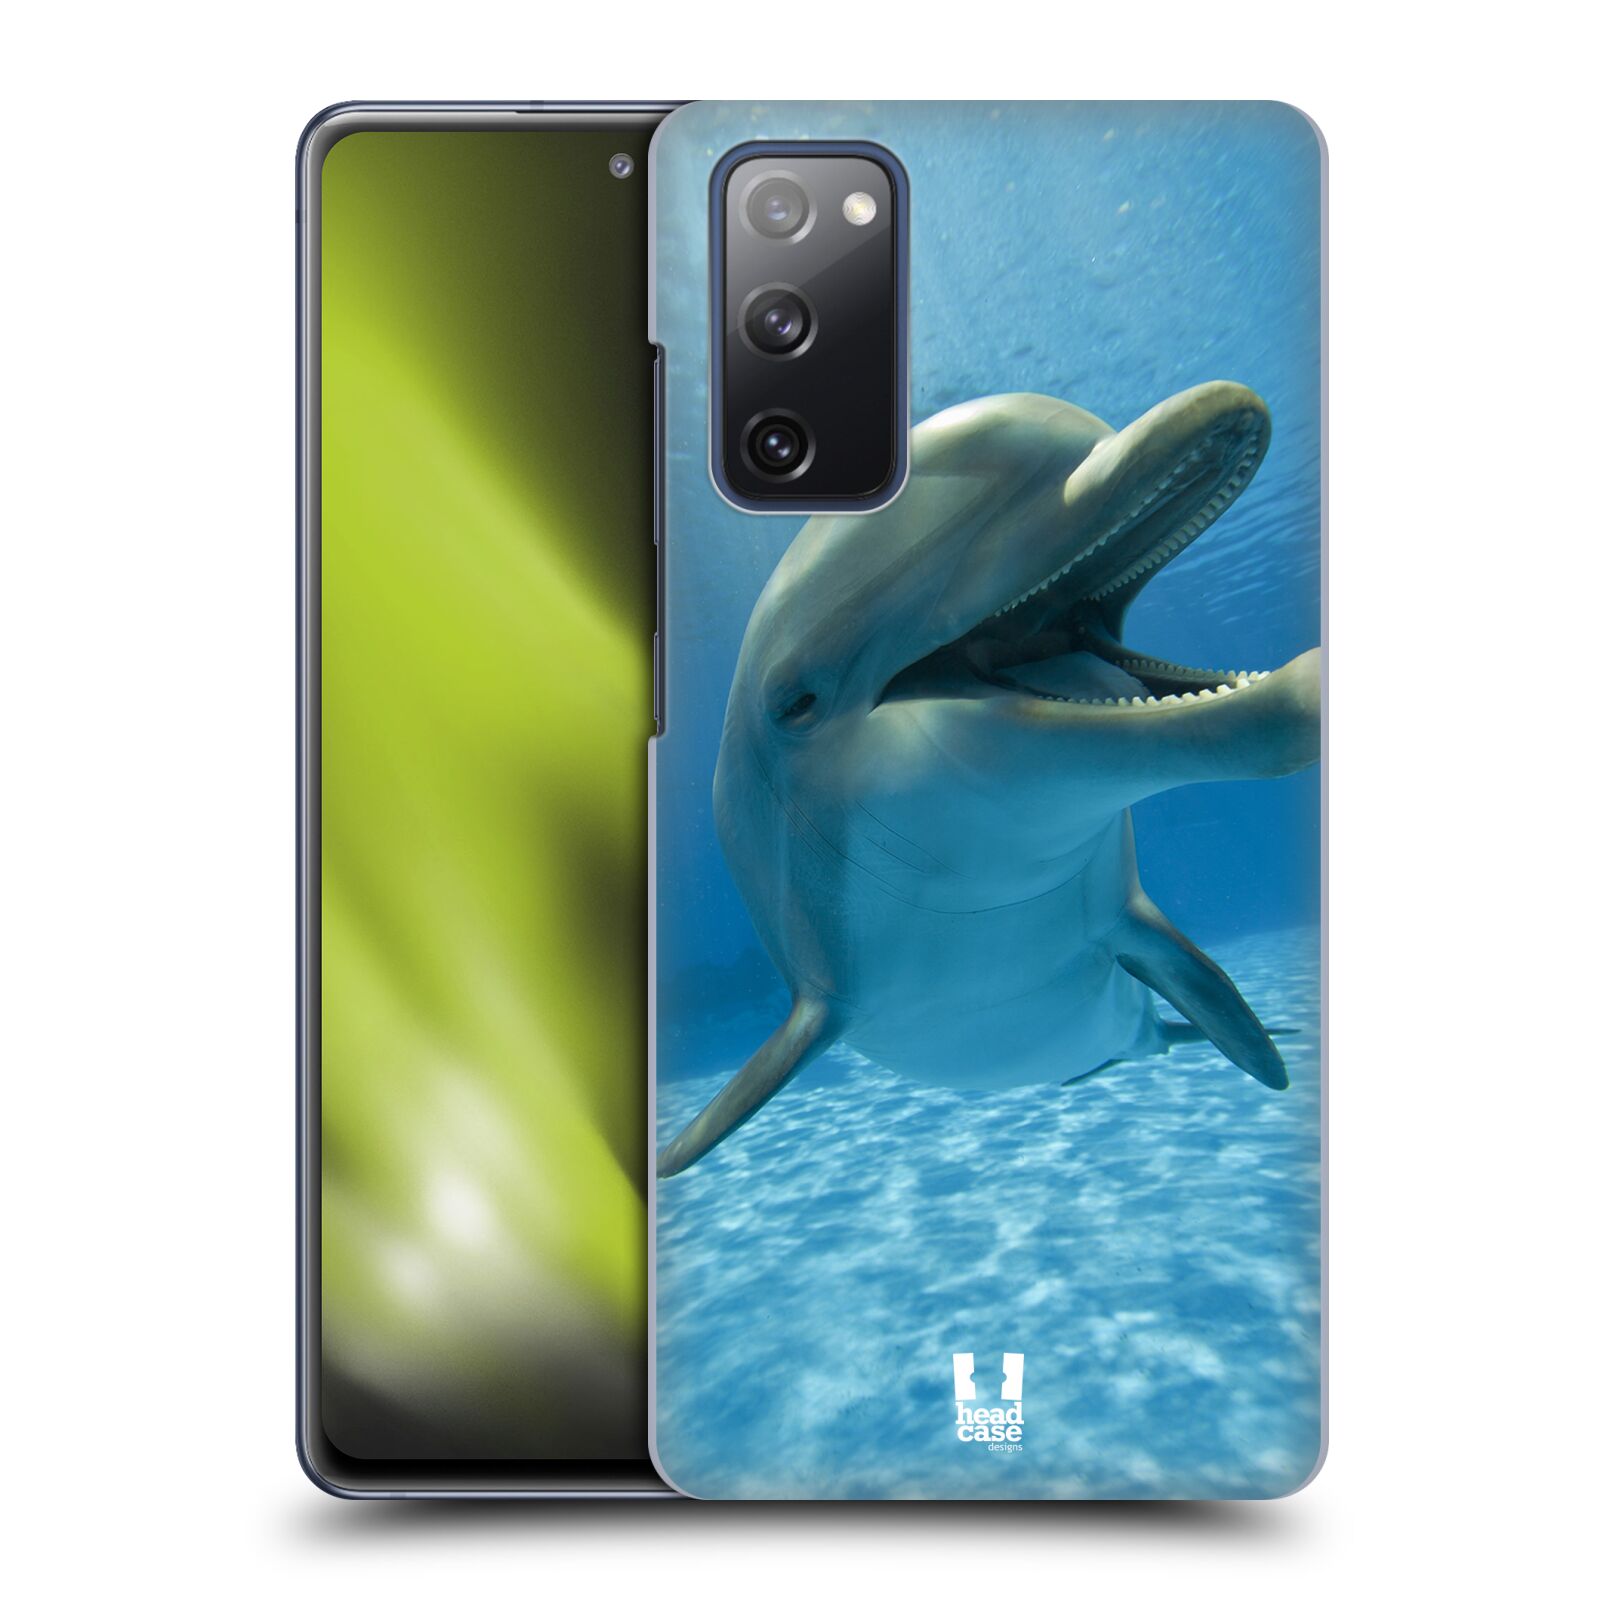 Zadní obal pro mobil Samsung Galaxy S20 FE / S20 FE 5G - HEAD CASE - Svět zvířat delfín v moři